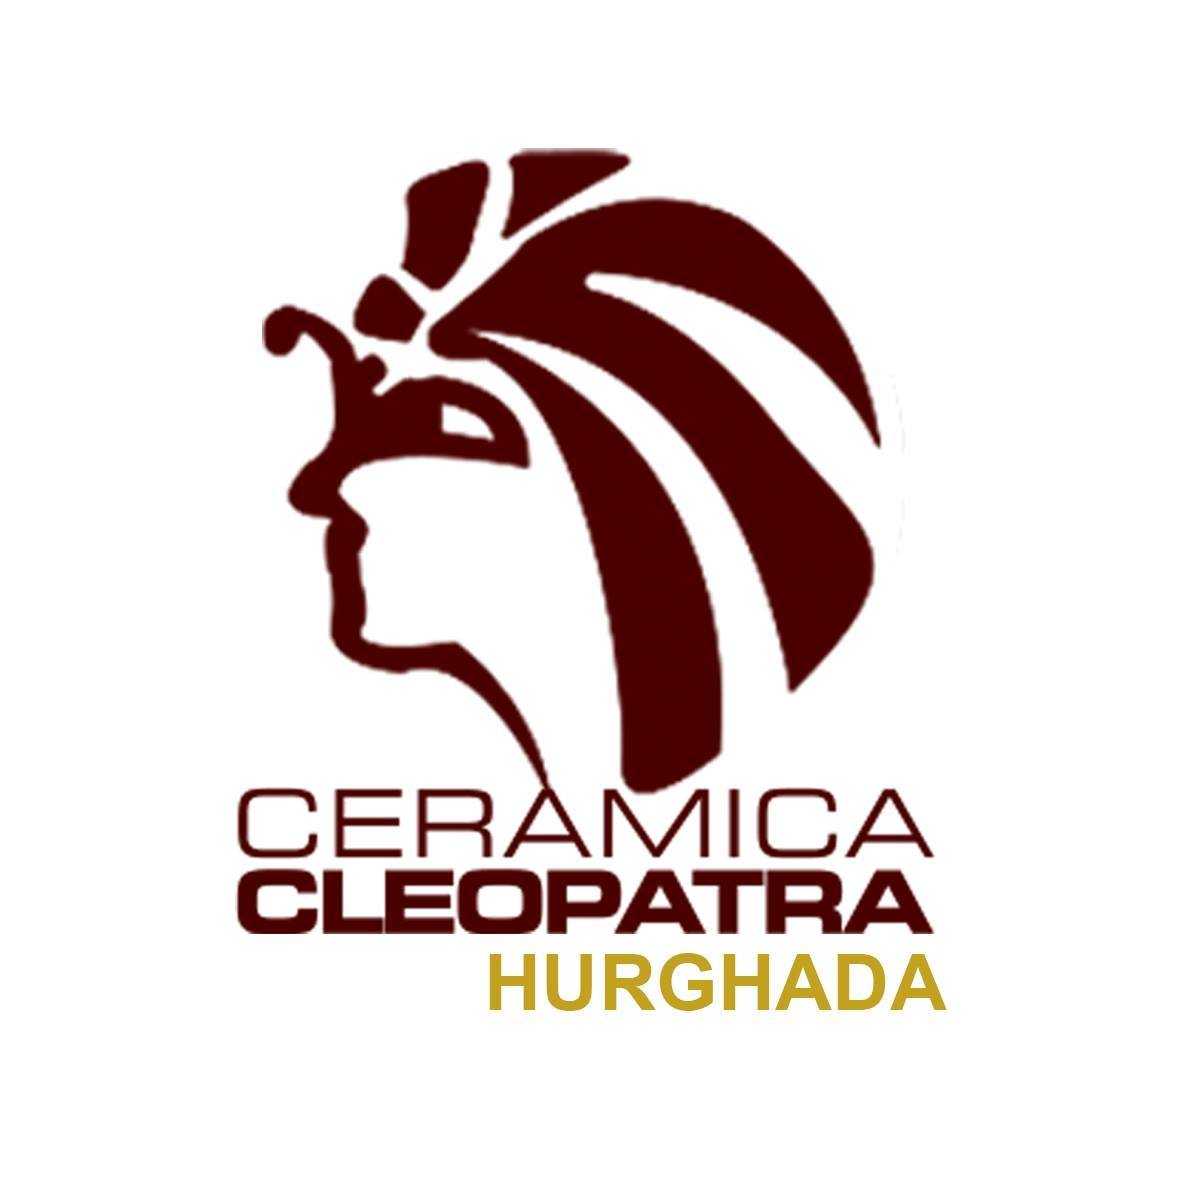 Cleopatra Hurghada